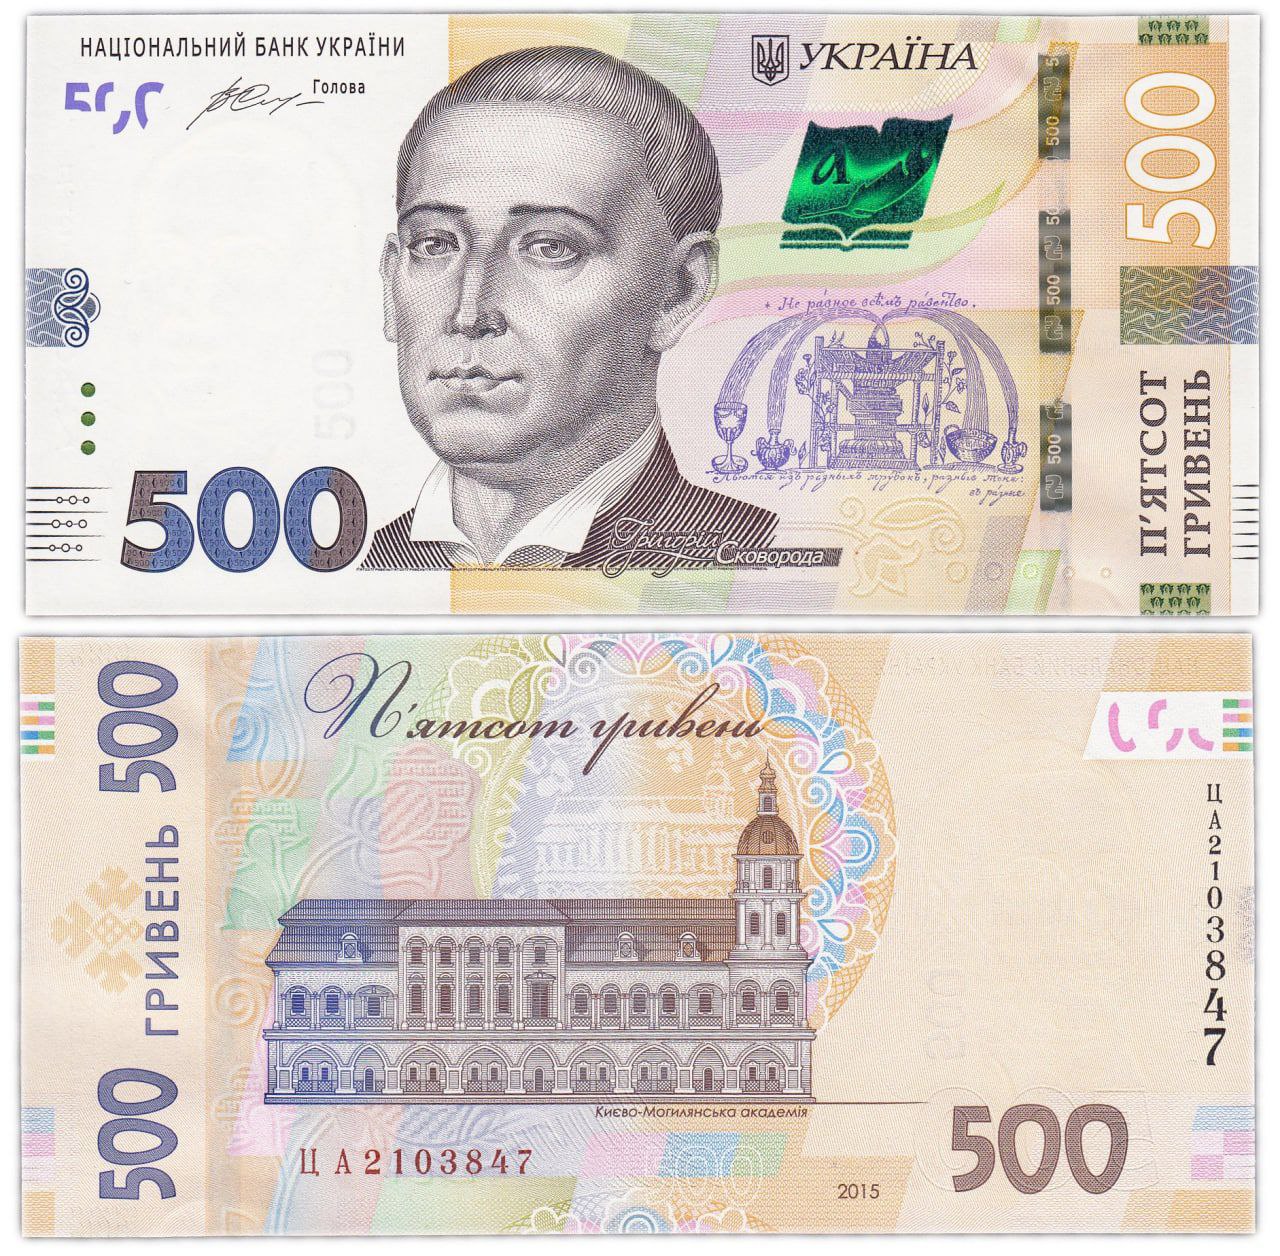 10 тыс гривен. 500 Гривен купюра. Банкнота Украины 500 гривен. Украинский деньги гривни 500. Как выглядит купюра 500 гривен.